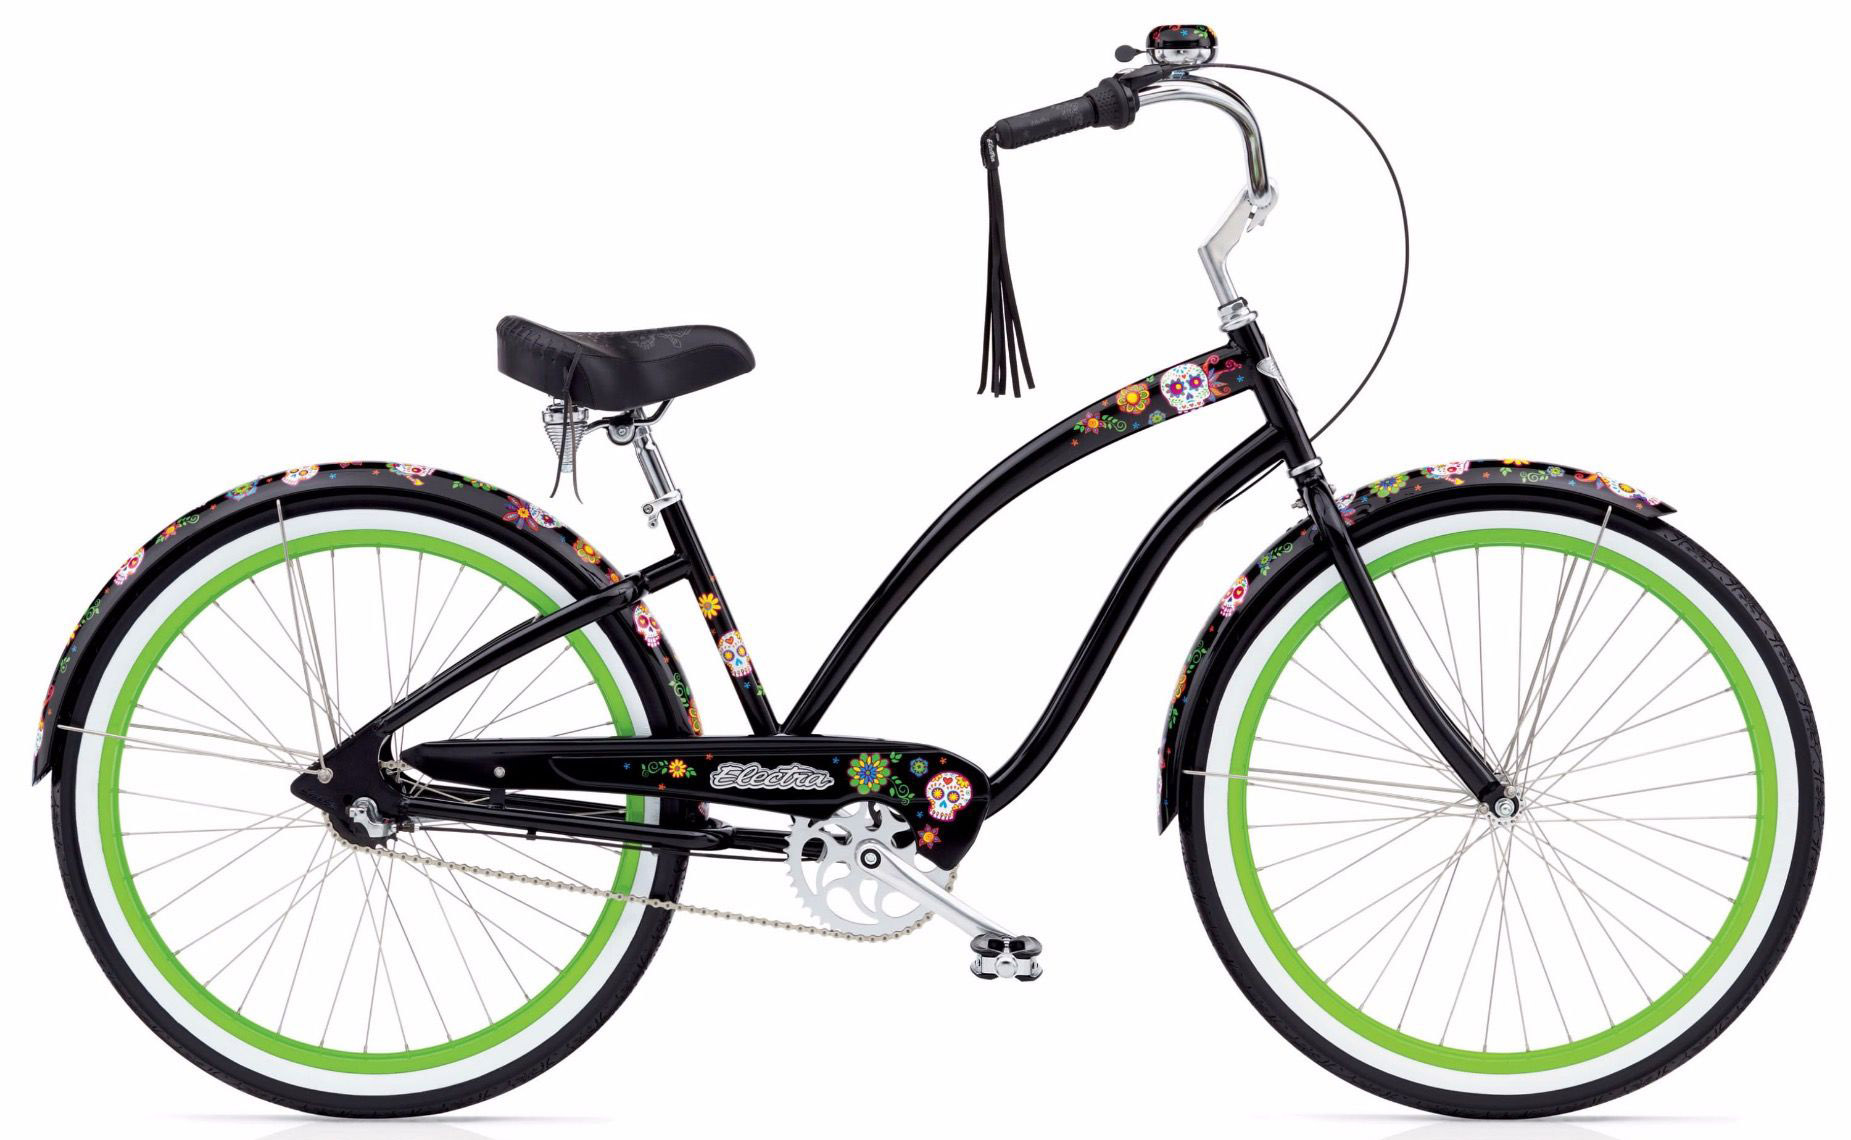  Отзывы о Велосипеде круизере Electra Cruiser Sugar Skulls 7i 2020